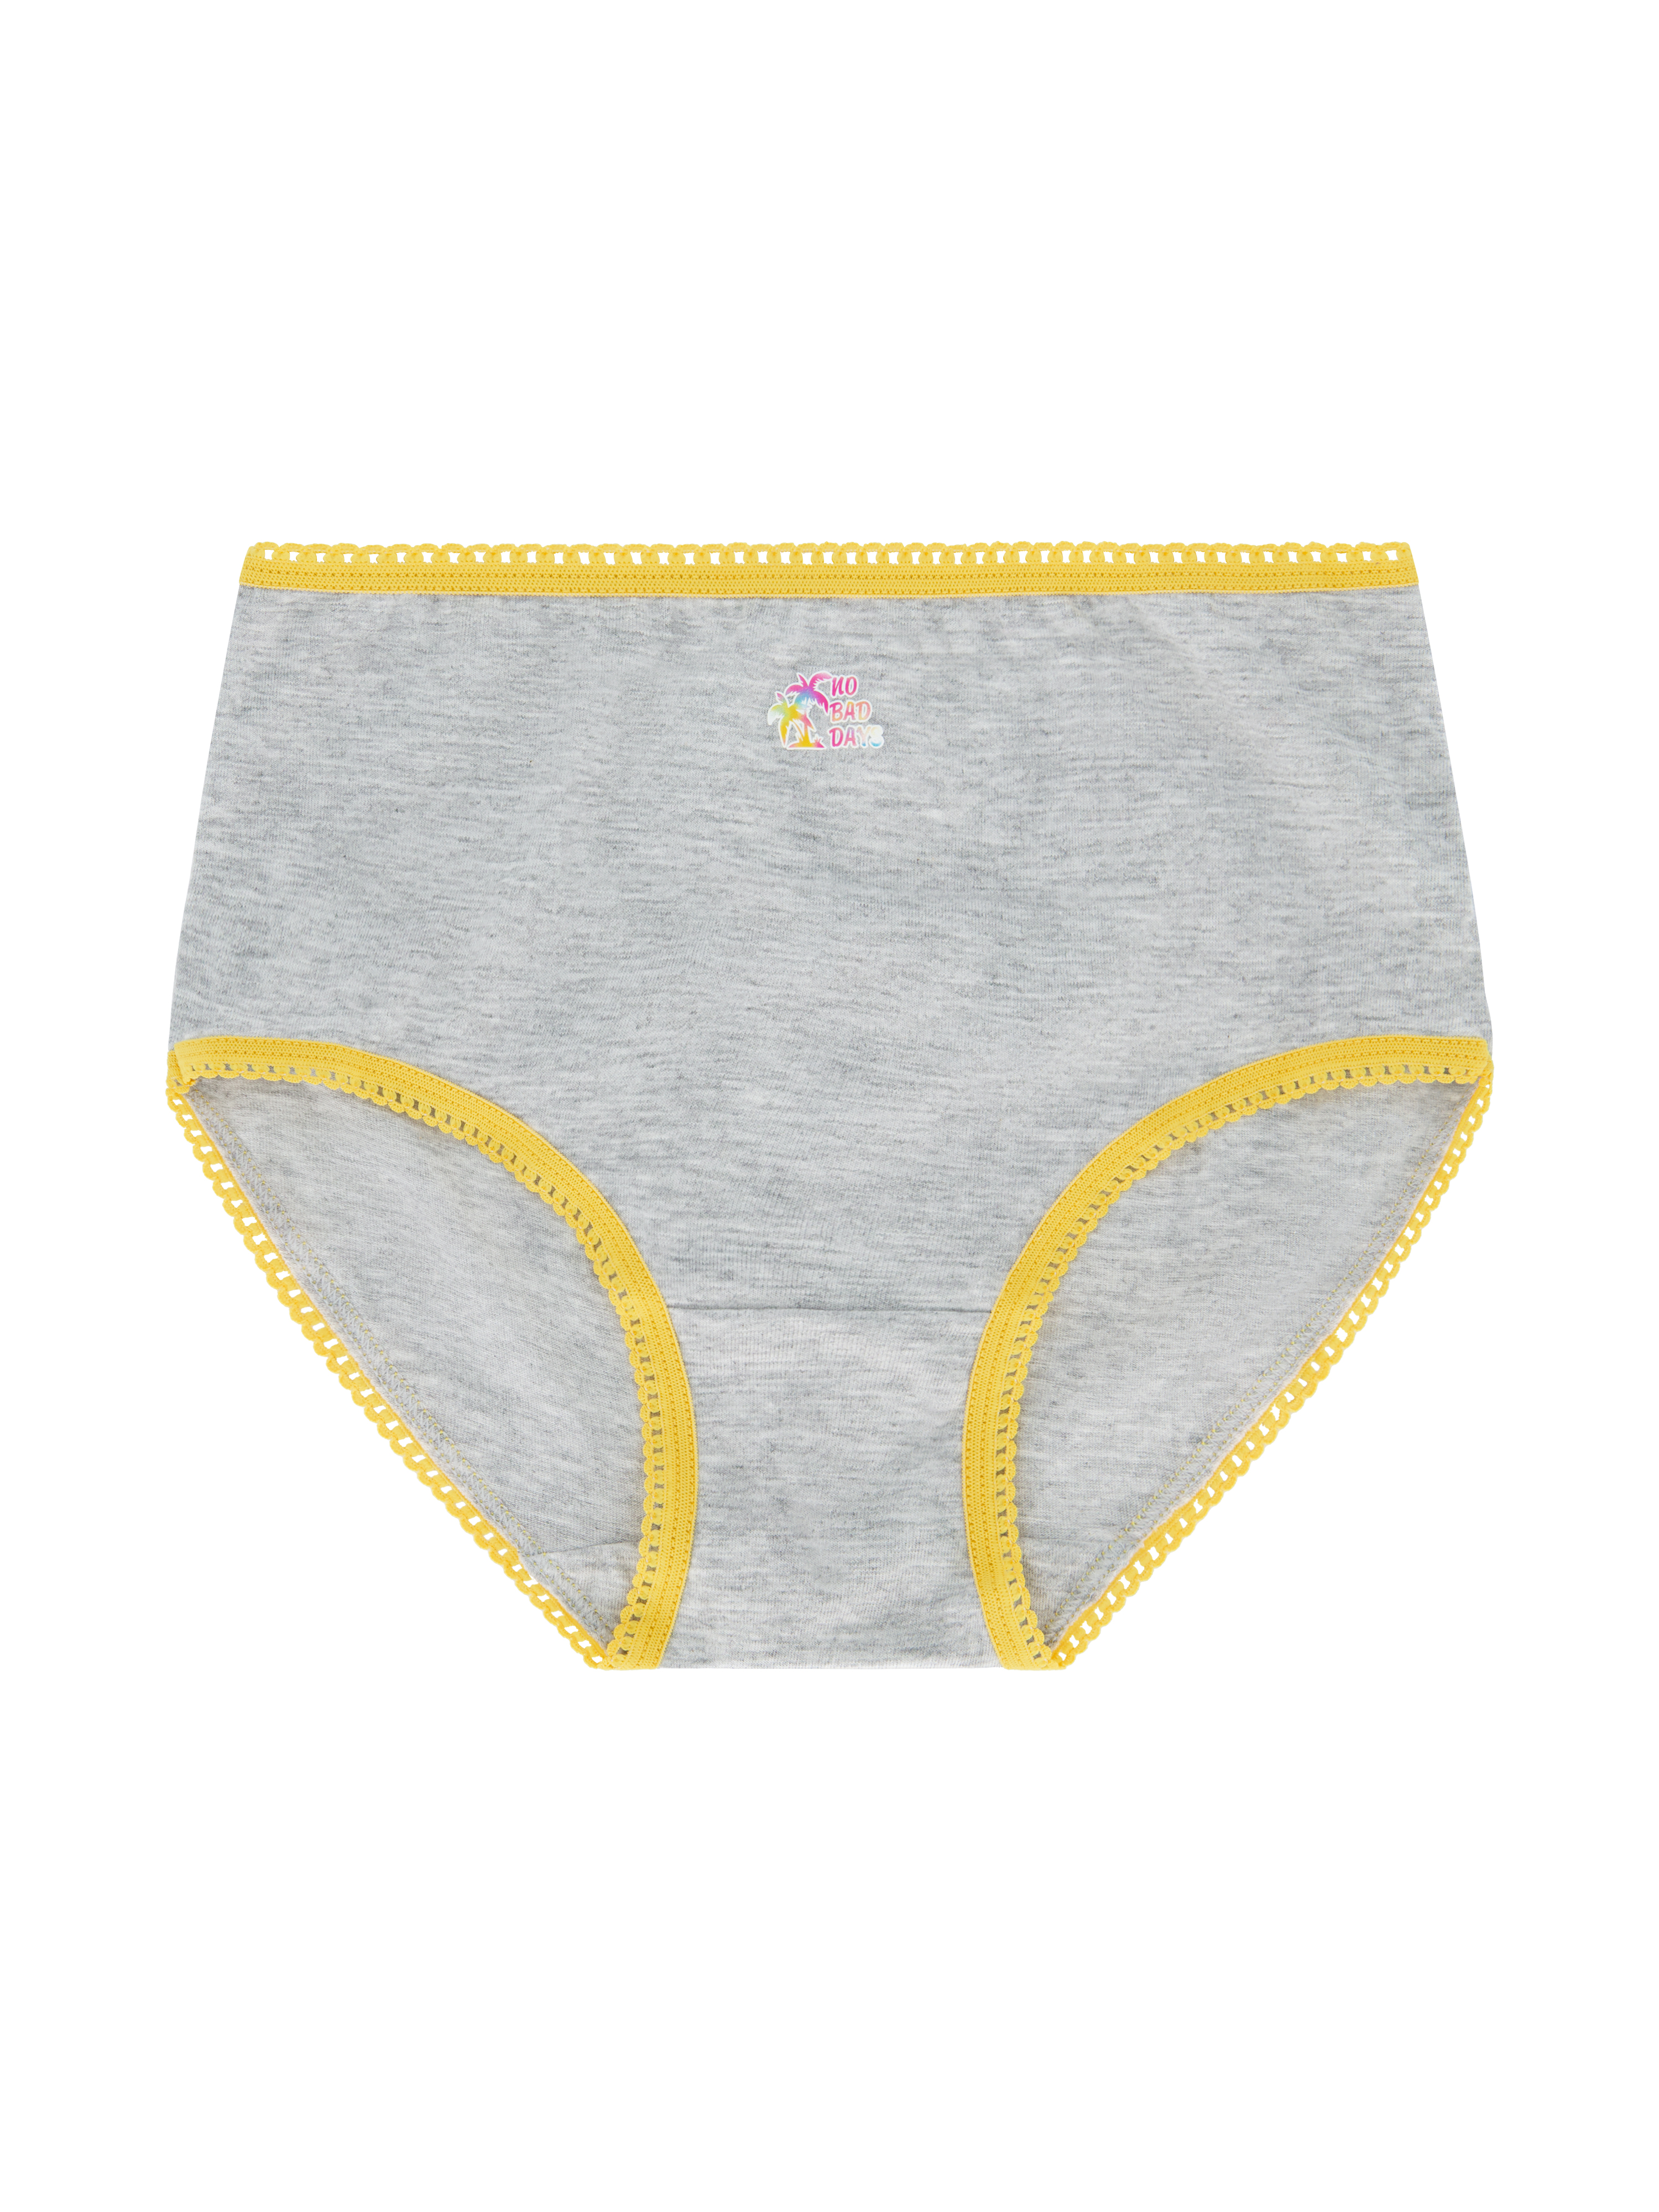 Wonder Nation Girls Brief Underwear 14-Pack, Sizes 4-18 - image 4 of 17